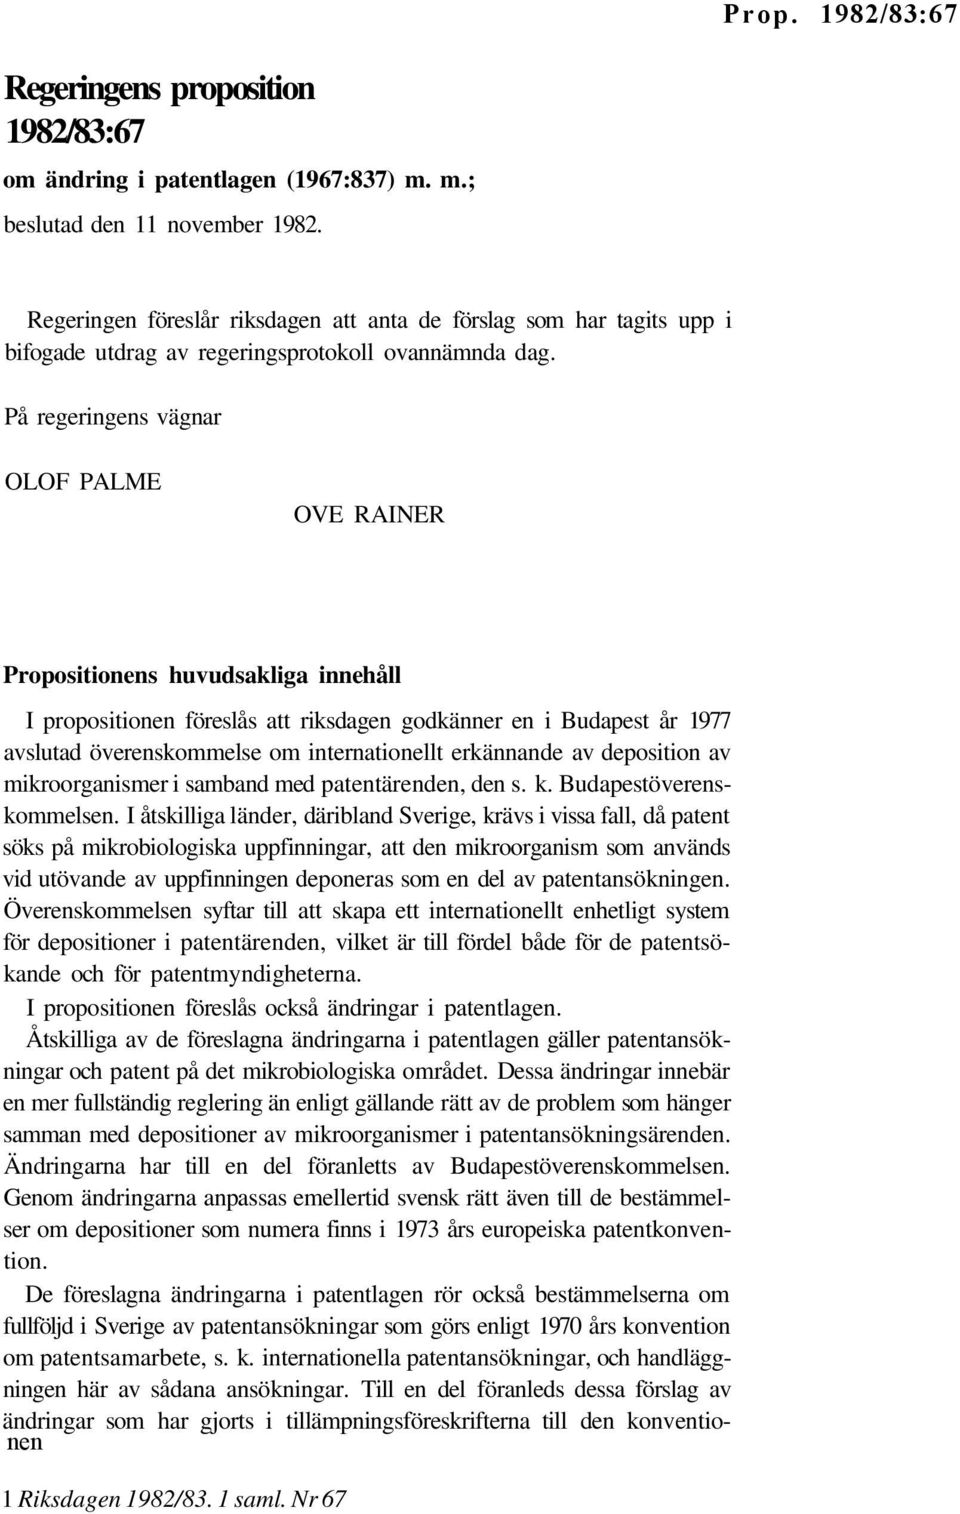 På regeringens vägnar OLOF PALME OVE RAINER Propositionens huvudsakliga innehåll I propositionen föreslås att riksdagen godkänner en i Budapest år 1977 avslutad överenskommelse om internationellt